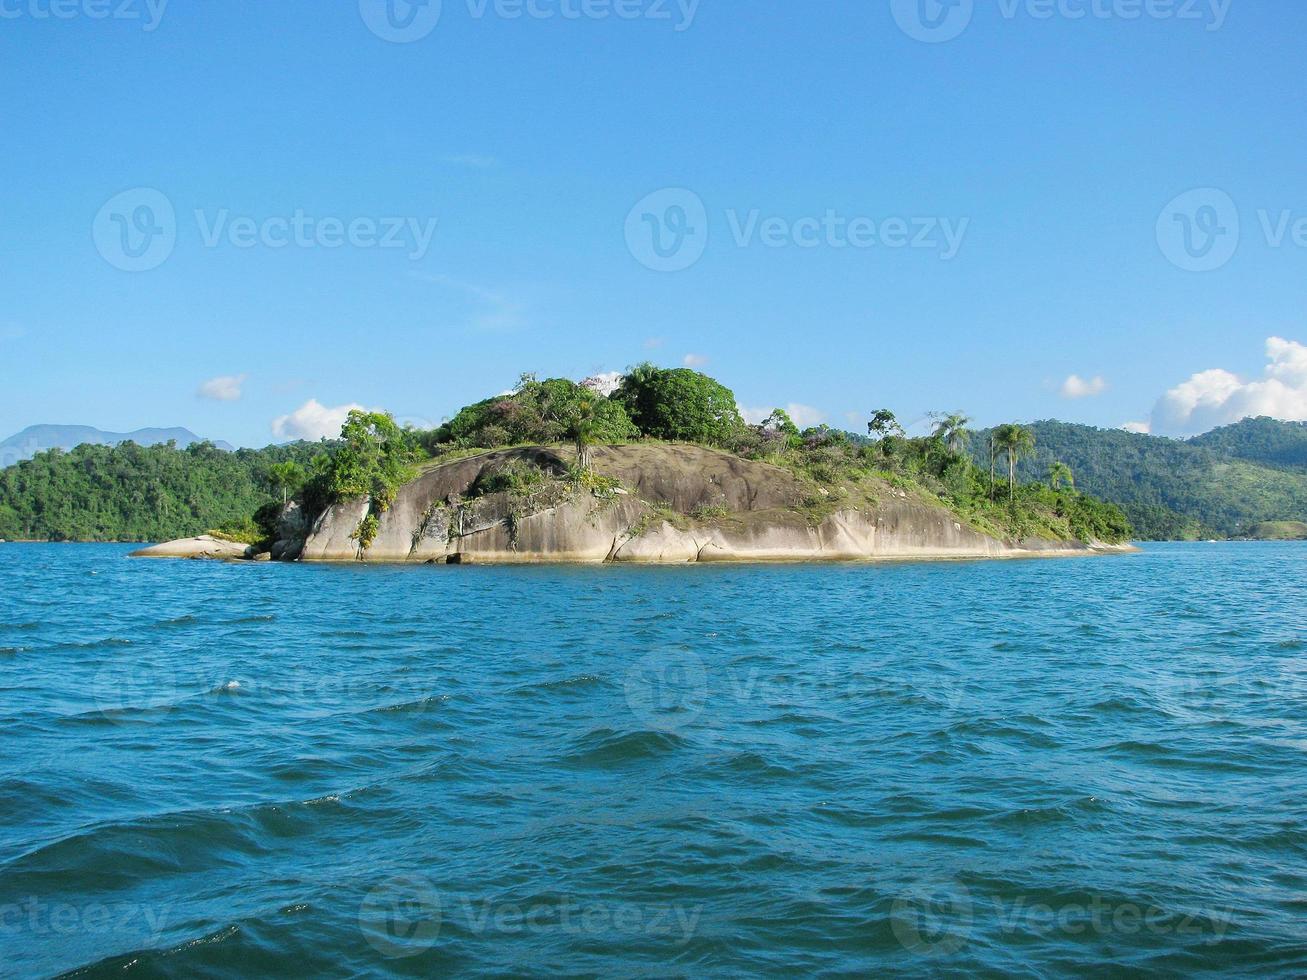 brasil: increíble costa verde ("costa verde") cerca de paraty y rio foto